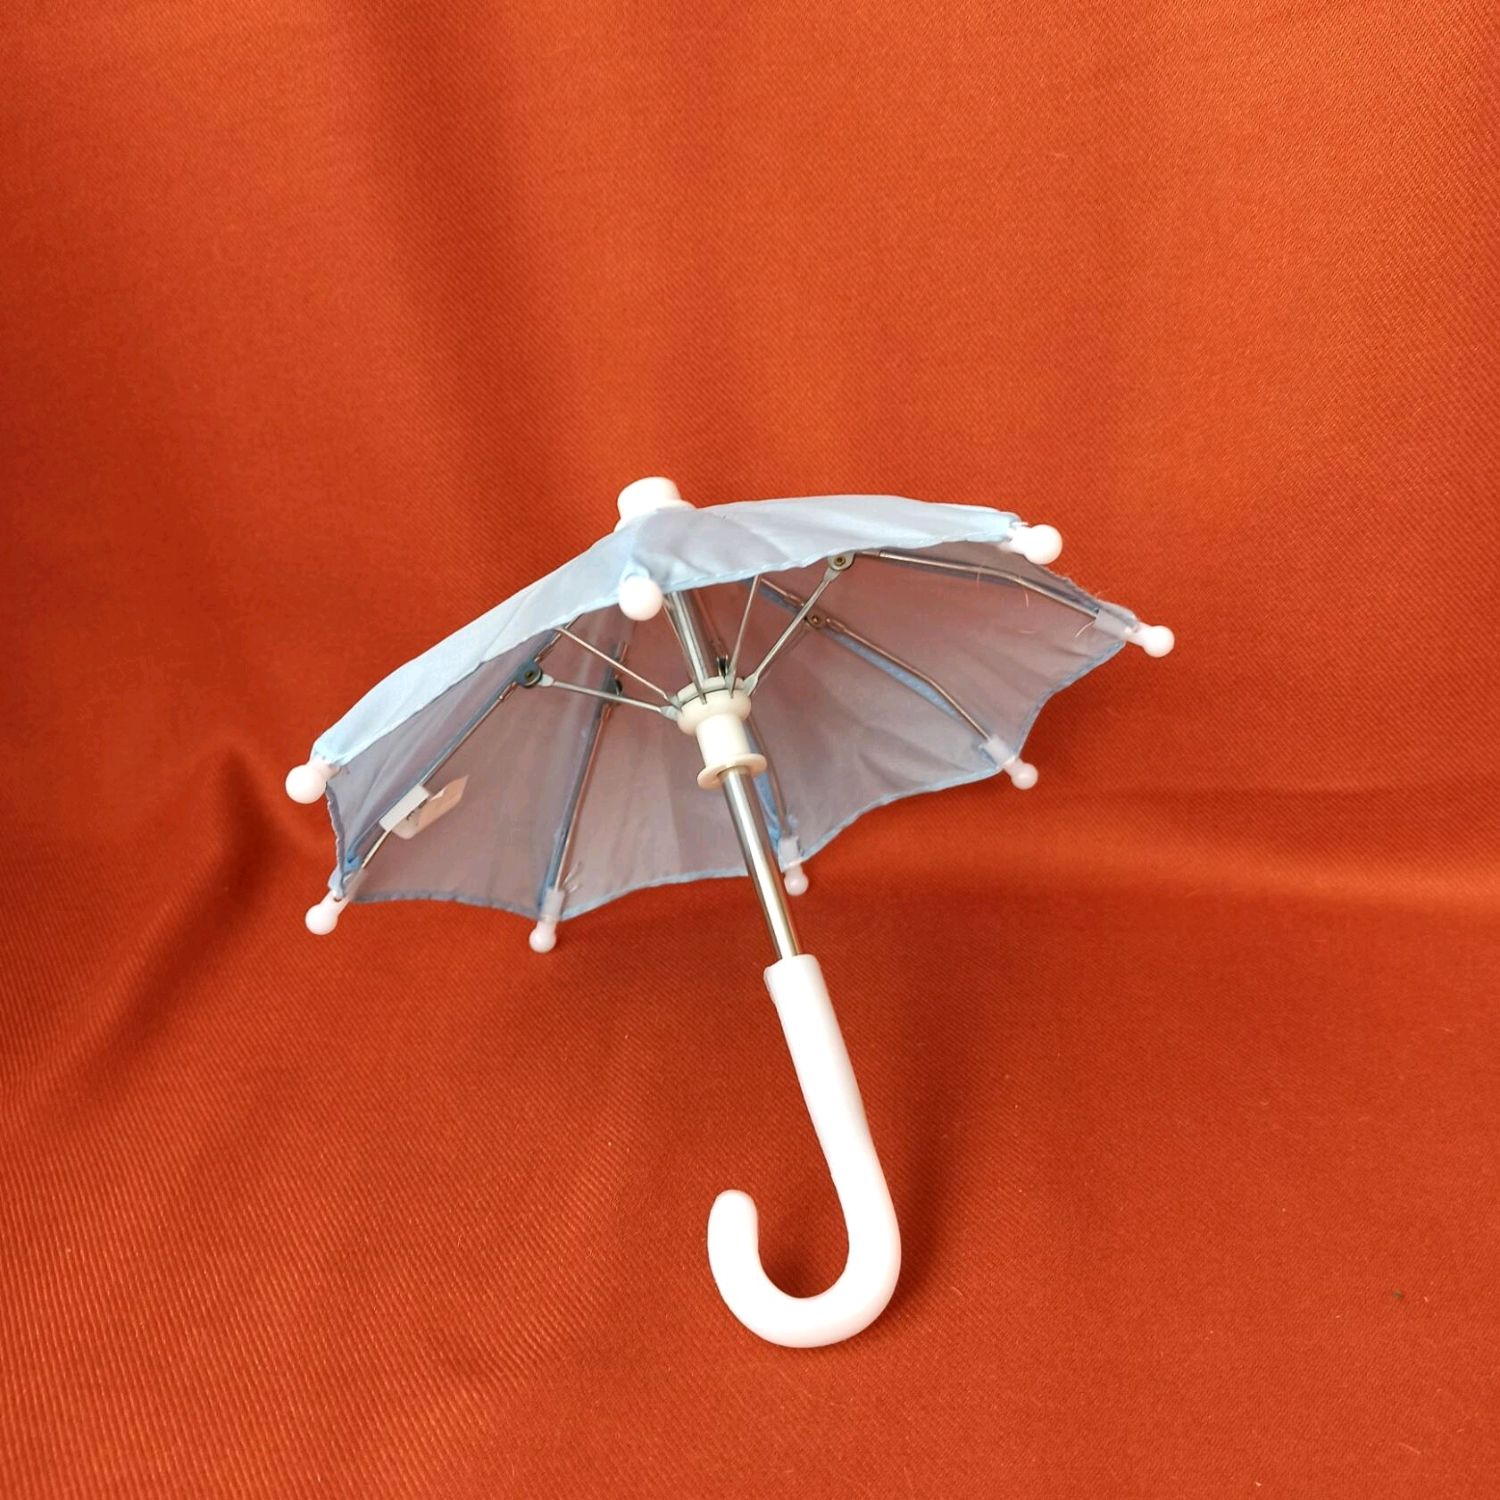 Зонтик кукольный - желтый| Hobbytut.